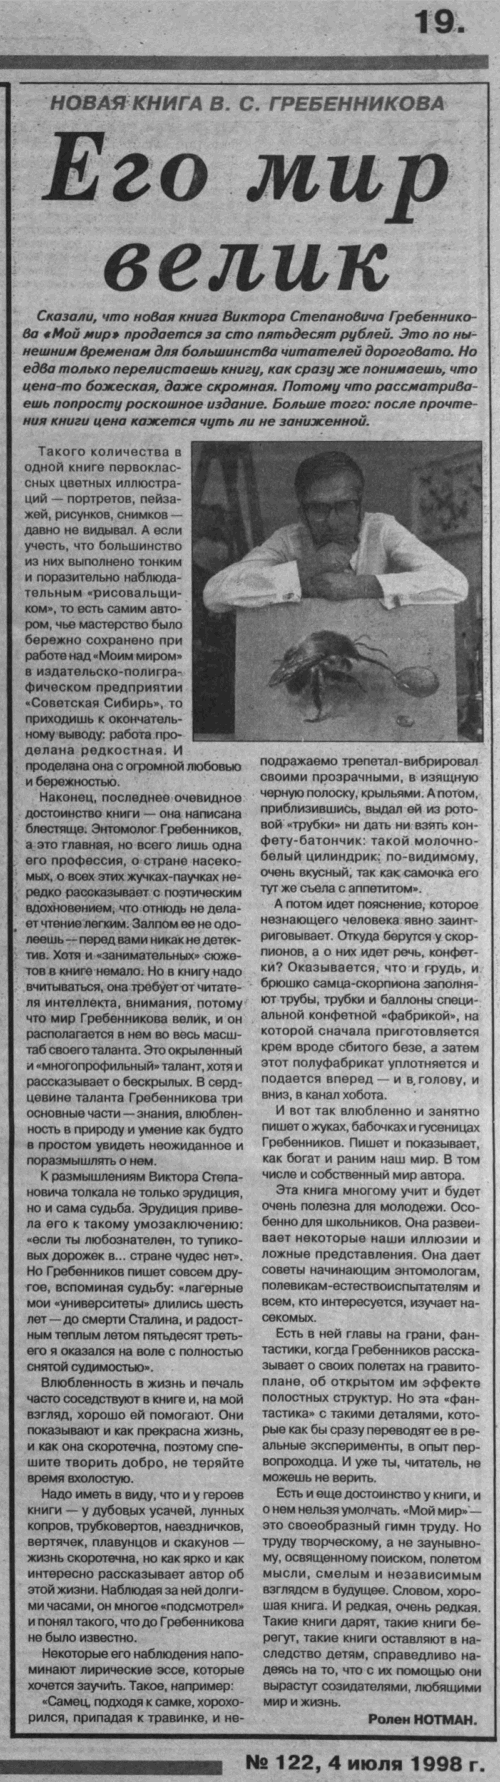 Его мир велик. Ролен НОТМАН. Советская Сибирь (Новосибирск), 04.07.1998, №122 (23237), с.19. Фотокопия